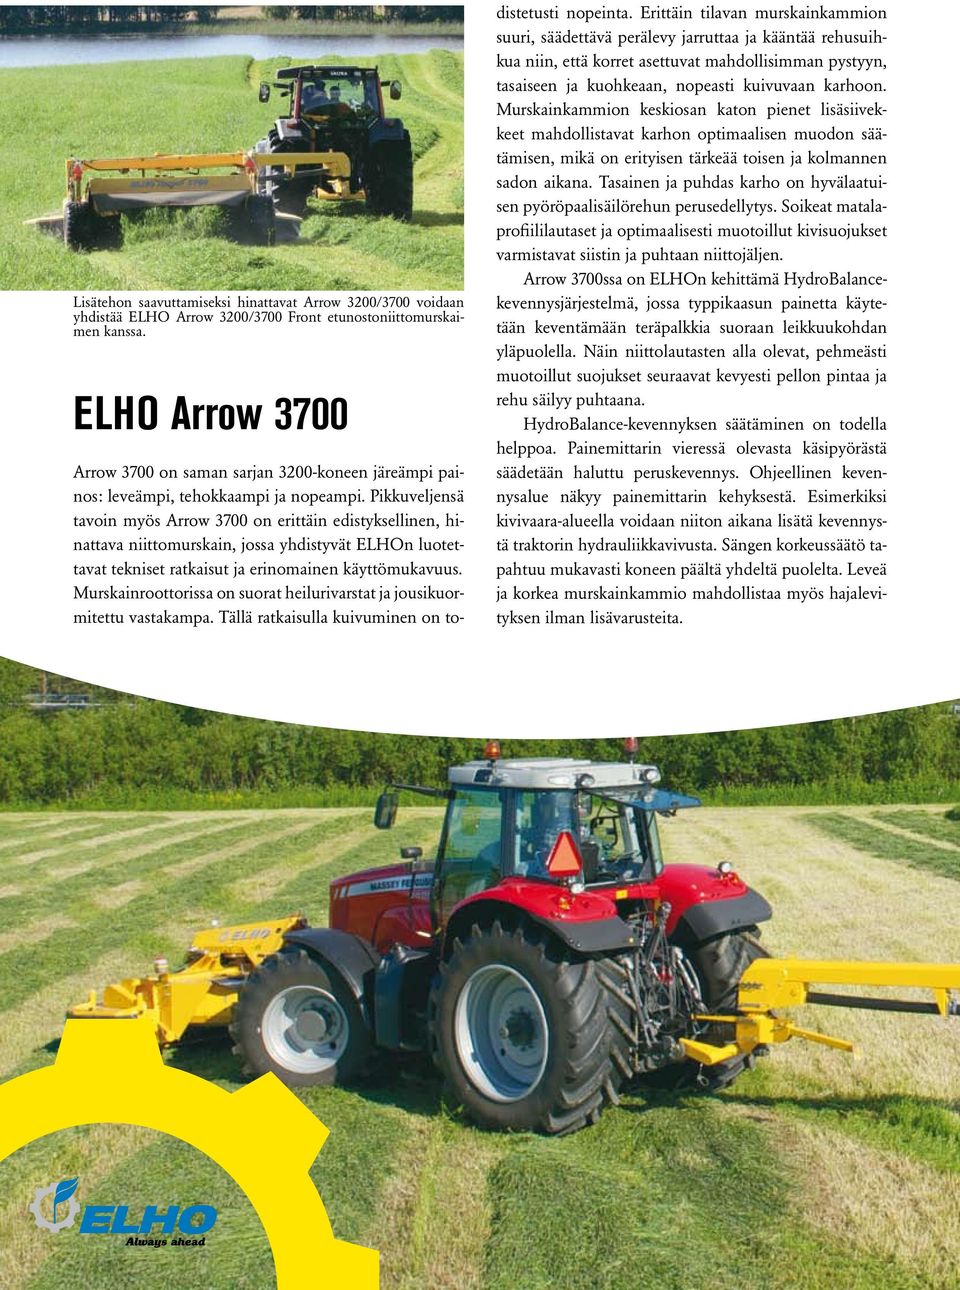 Pikkuveljensä tavoin myös Arrow 3700 on erittäin edistyksellinen, hinattava niittomurskain, jossa yhdistyvät ELHOn luotettavat tekniset ratkaisut ja erinomainen käyttömukavuus.